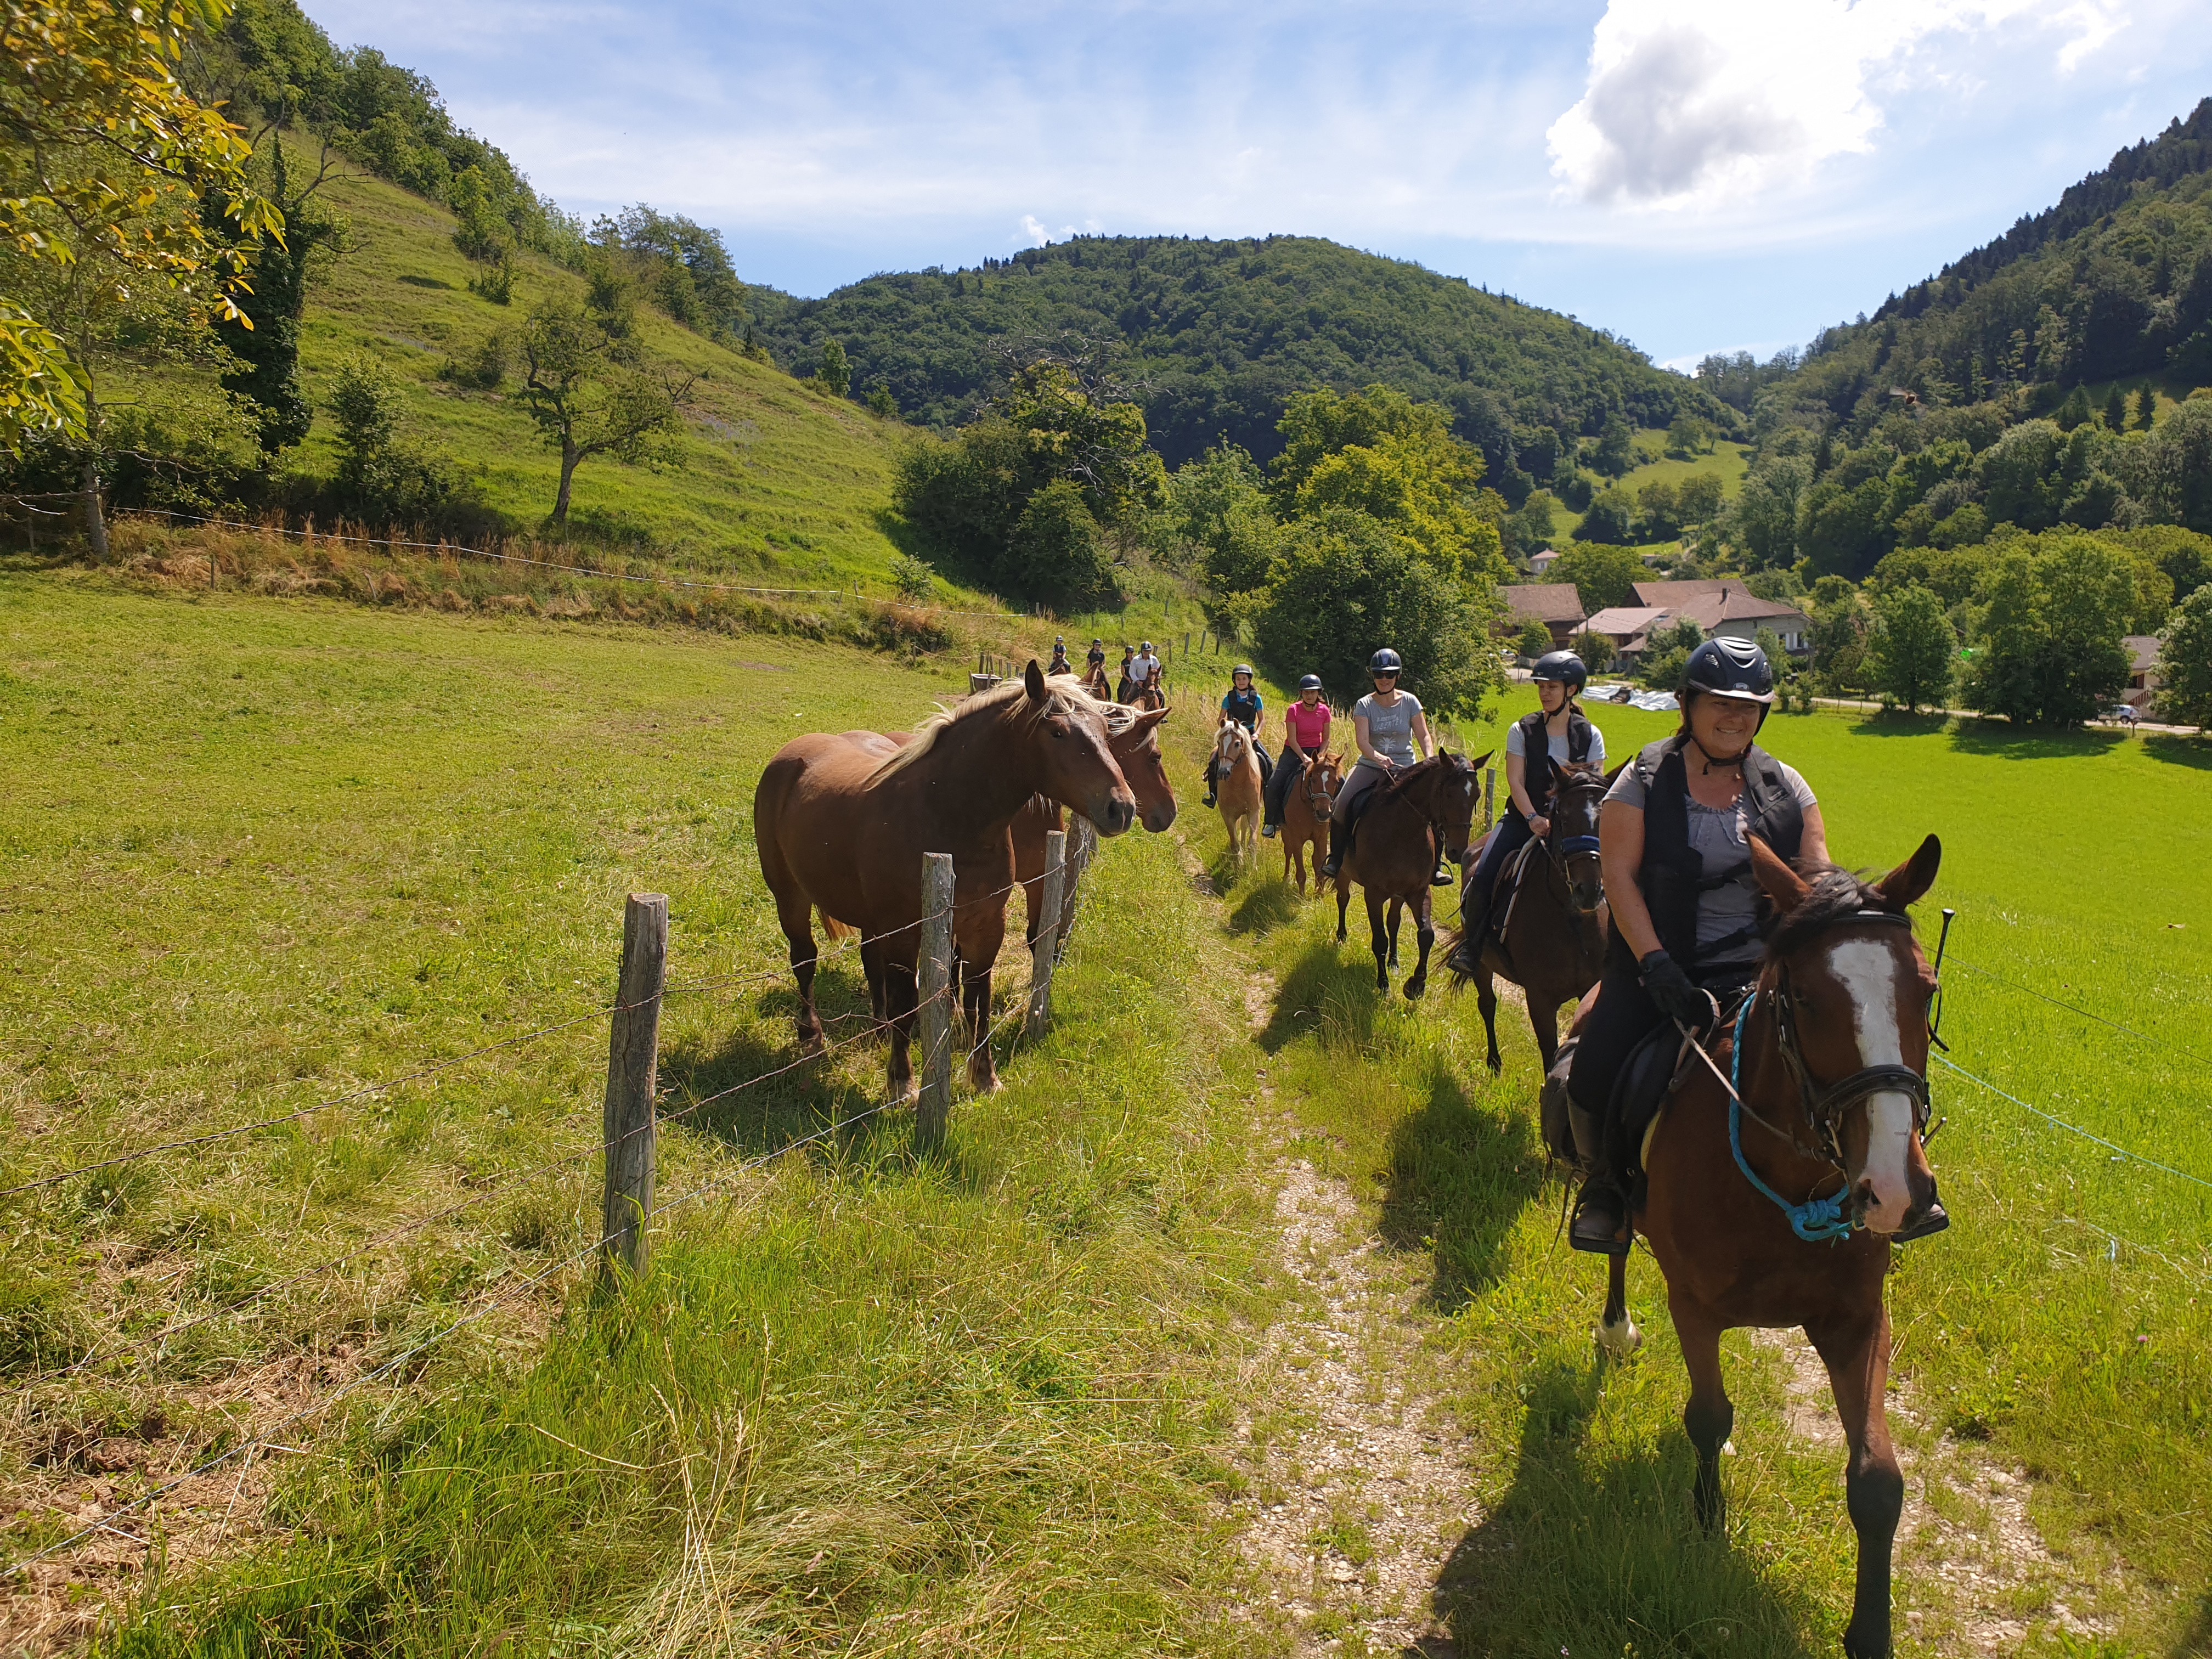 Balade à cheval dans le massif de la Chartreuse | Isère Tourisme